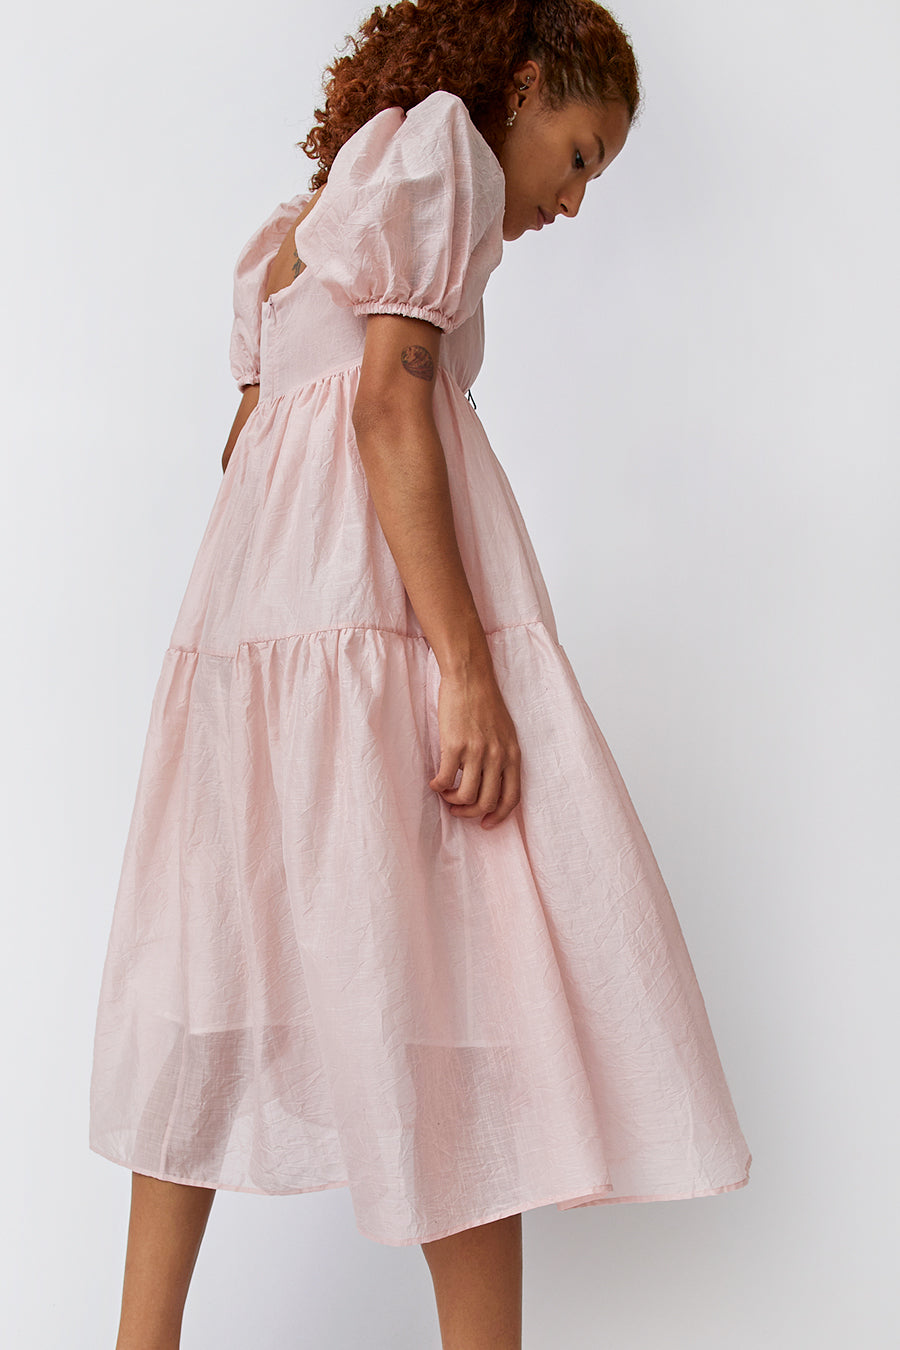 Naya Rea Elenora Dress in Light Pink